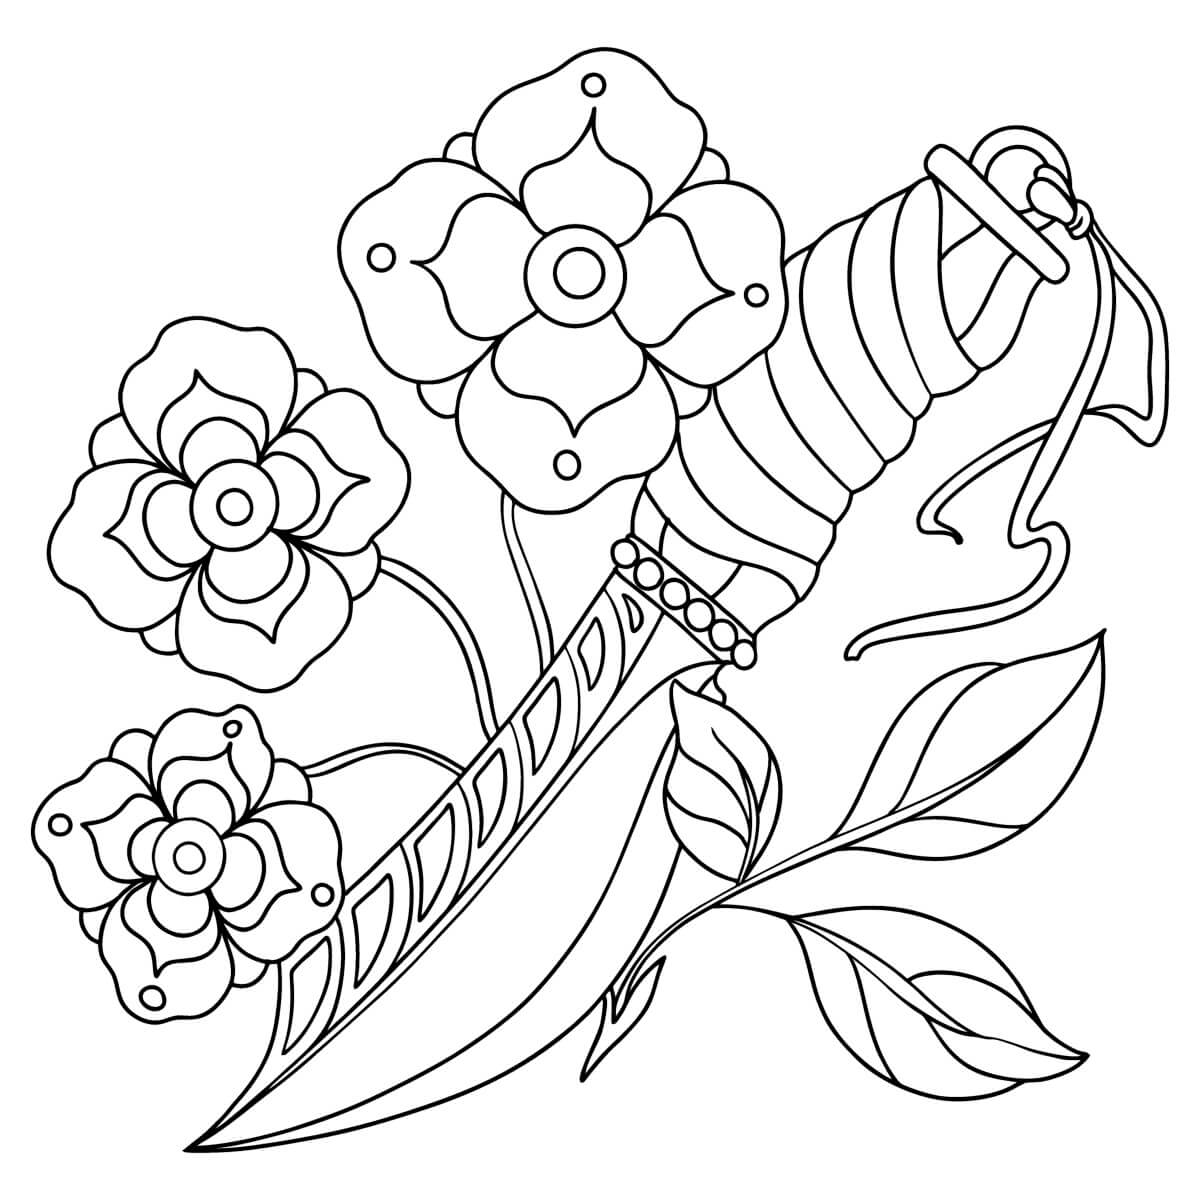 Desenhos de Faca e Tatuagem de Flores para colorir